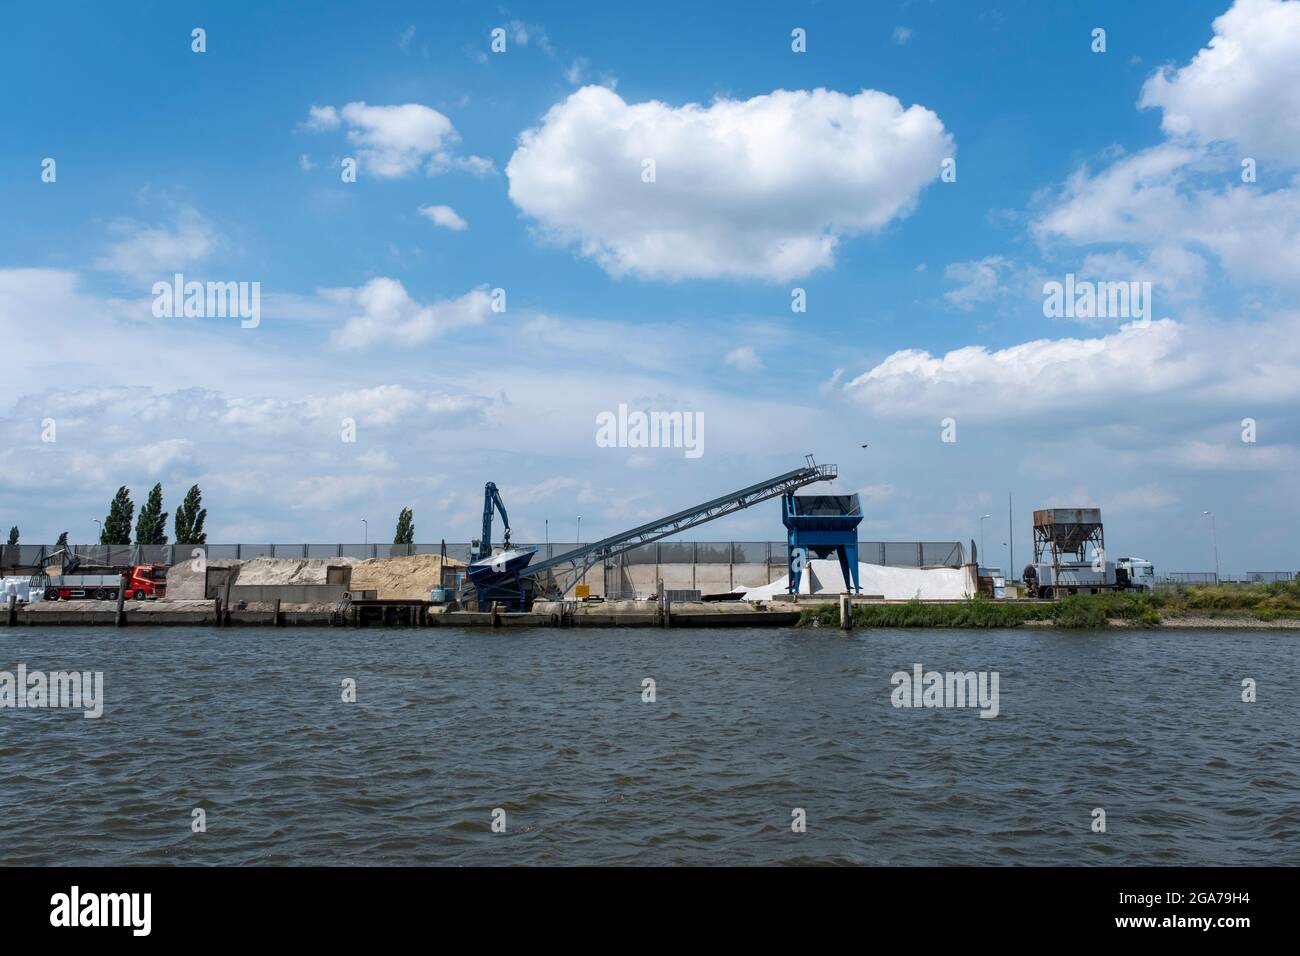 Die Massengutladung im Hafen - Sand für den Bau in den niederlanden Stockfoto